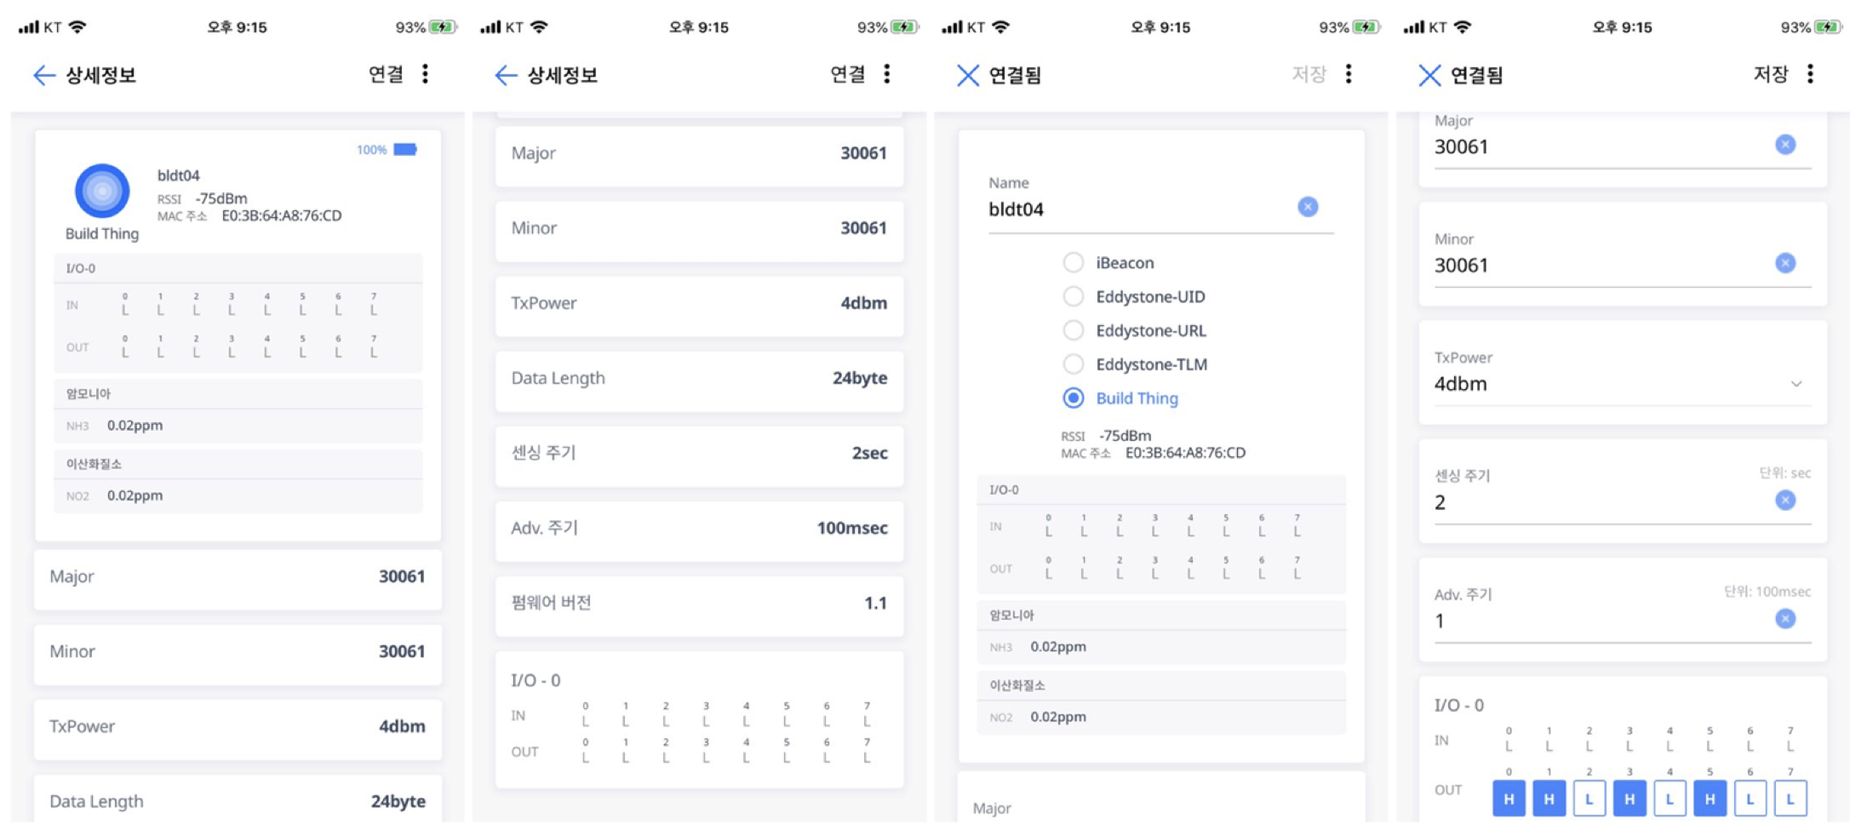 관리자 앱의 신규 센서 및 액세서리 정보 추가에 따른 비콘 정보 업데이트